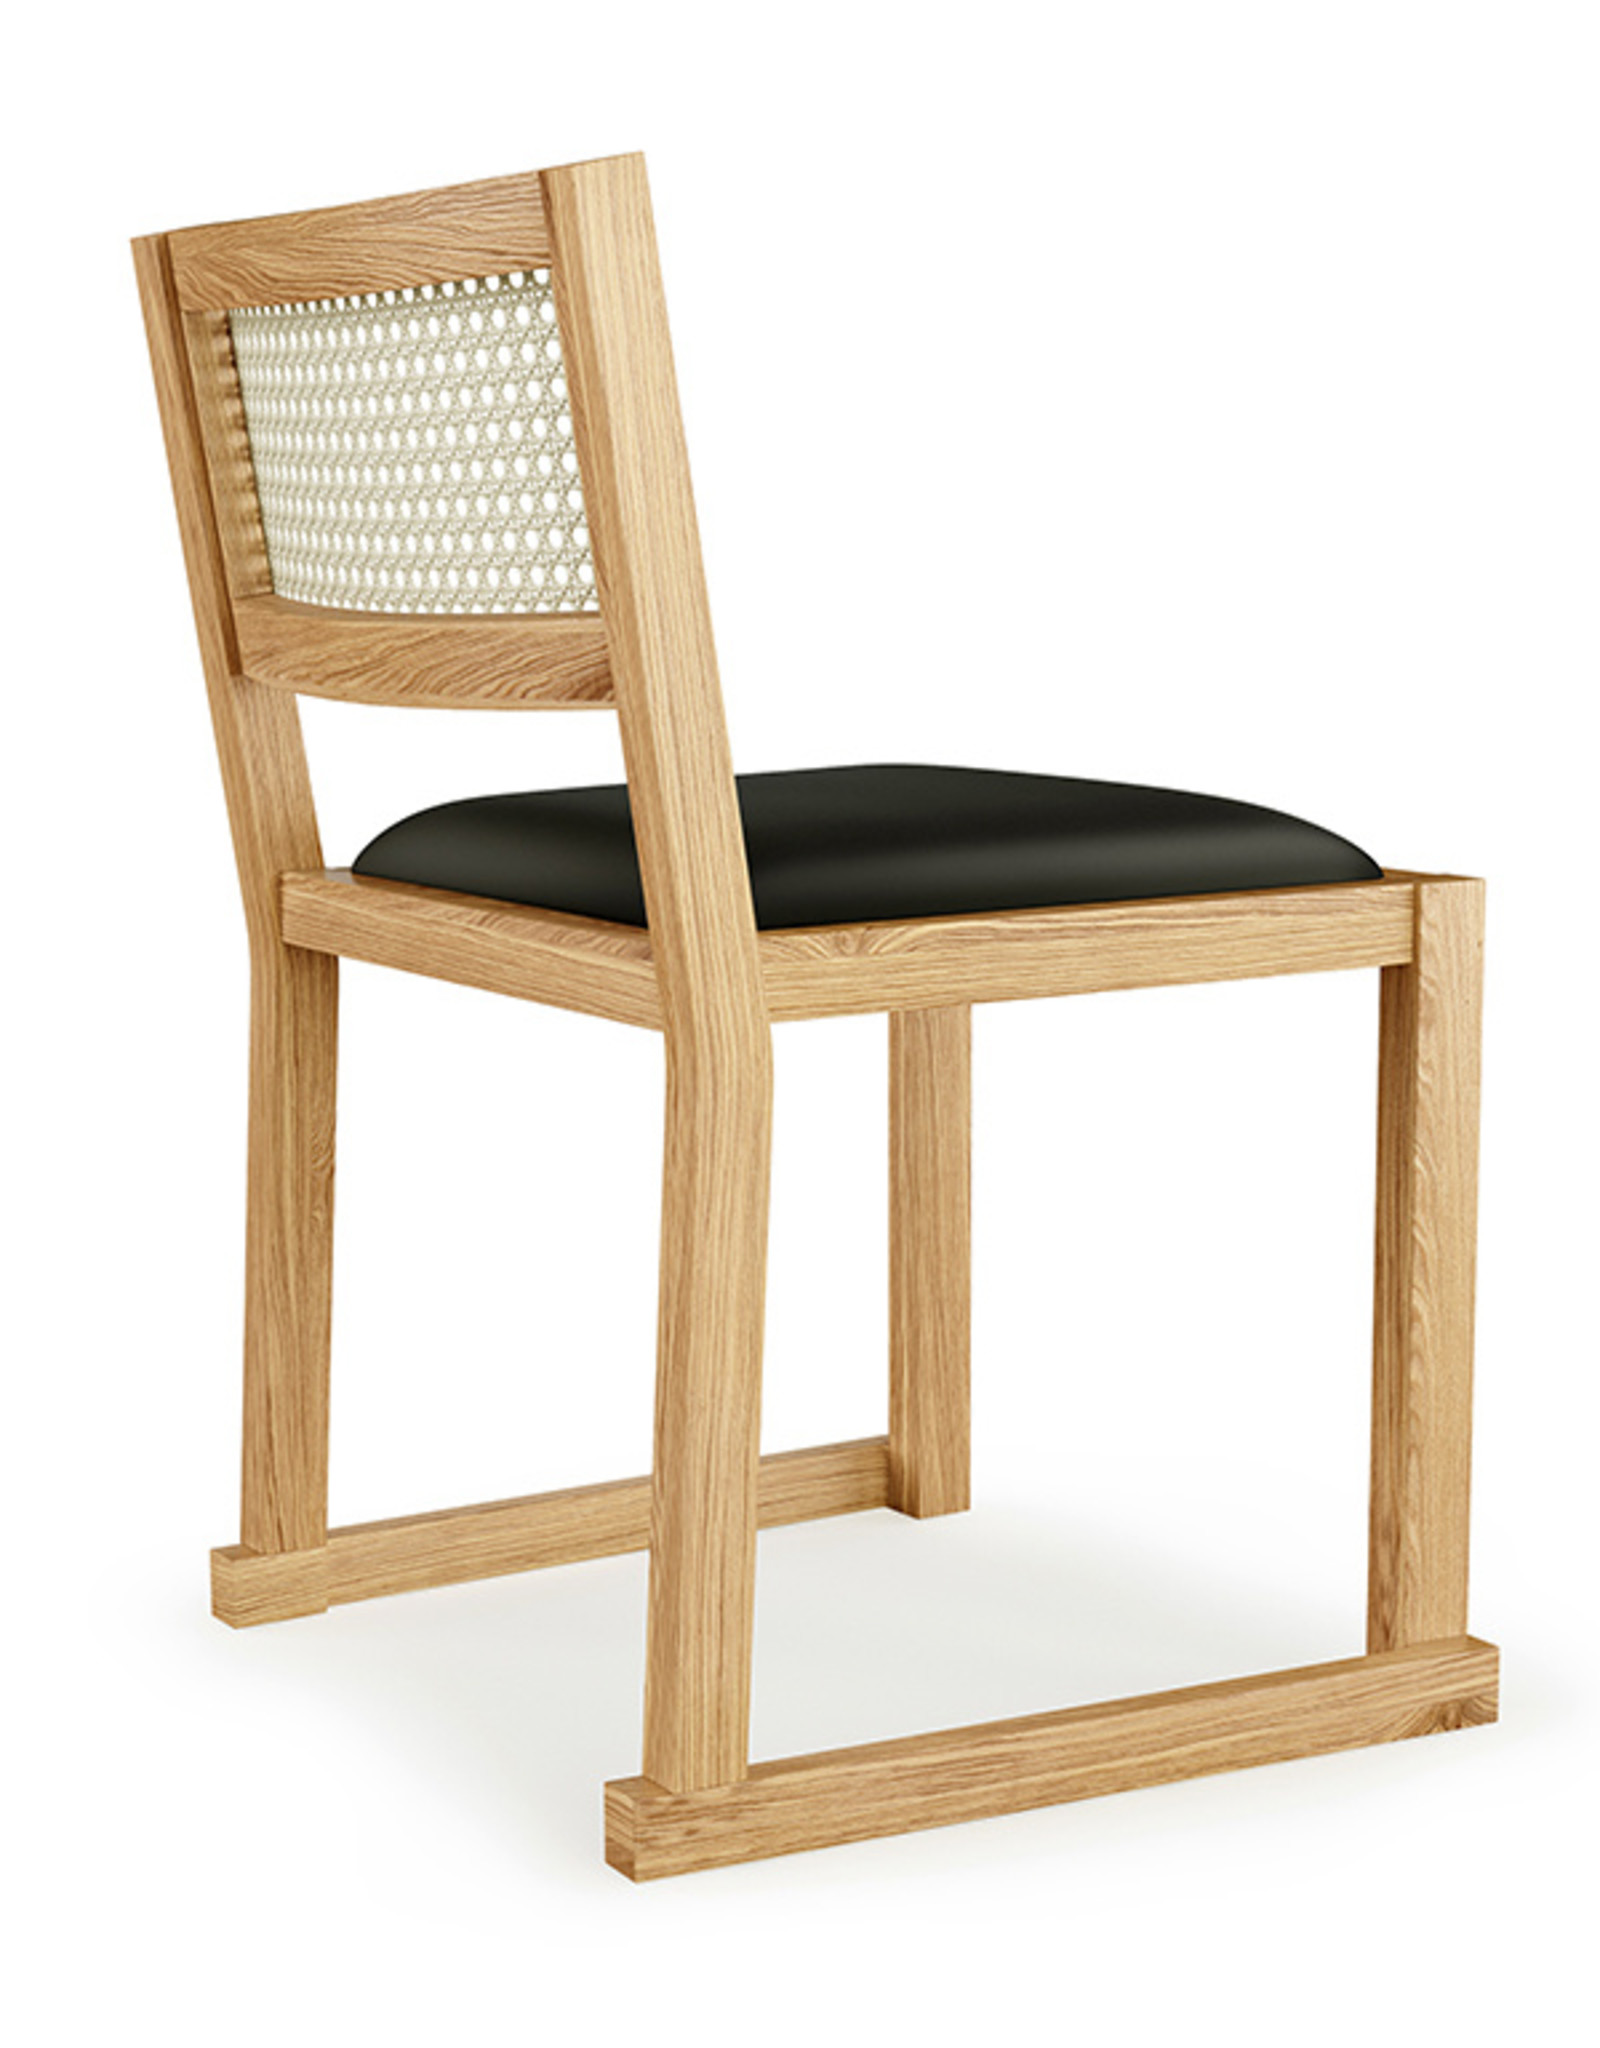 Gus* Modern Eglinton Dining Chair